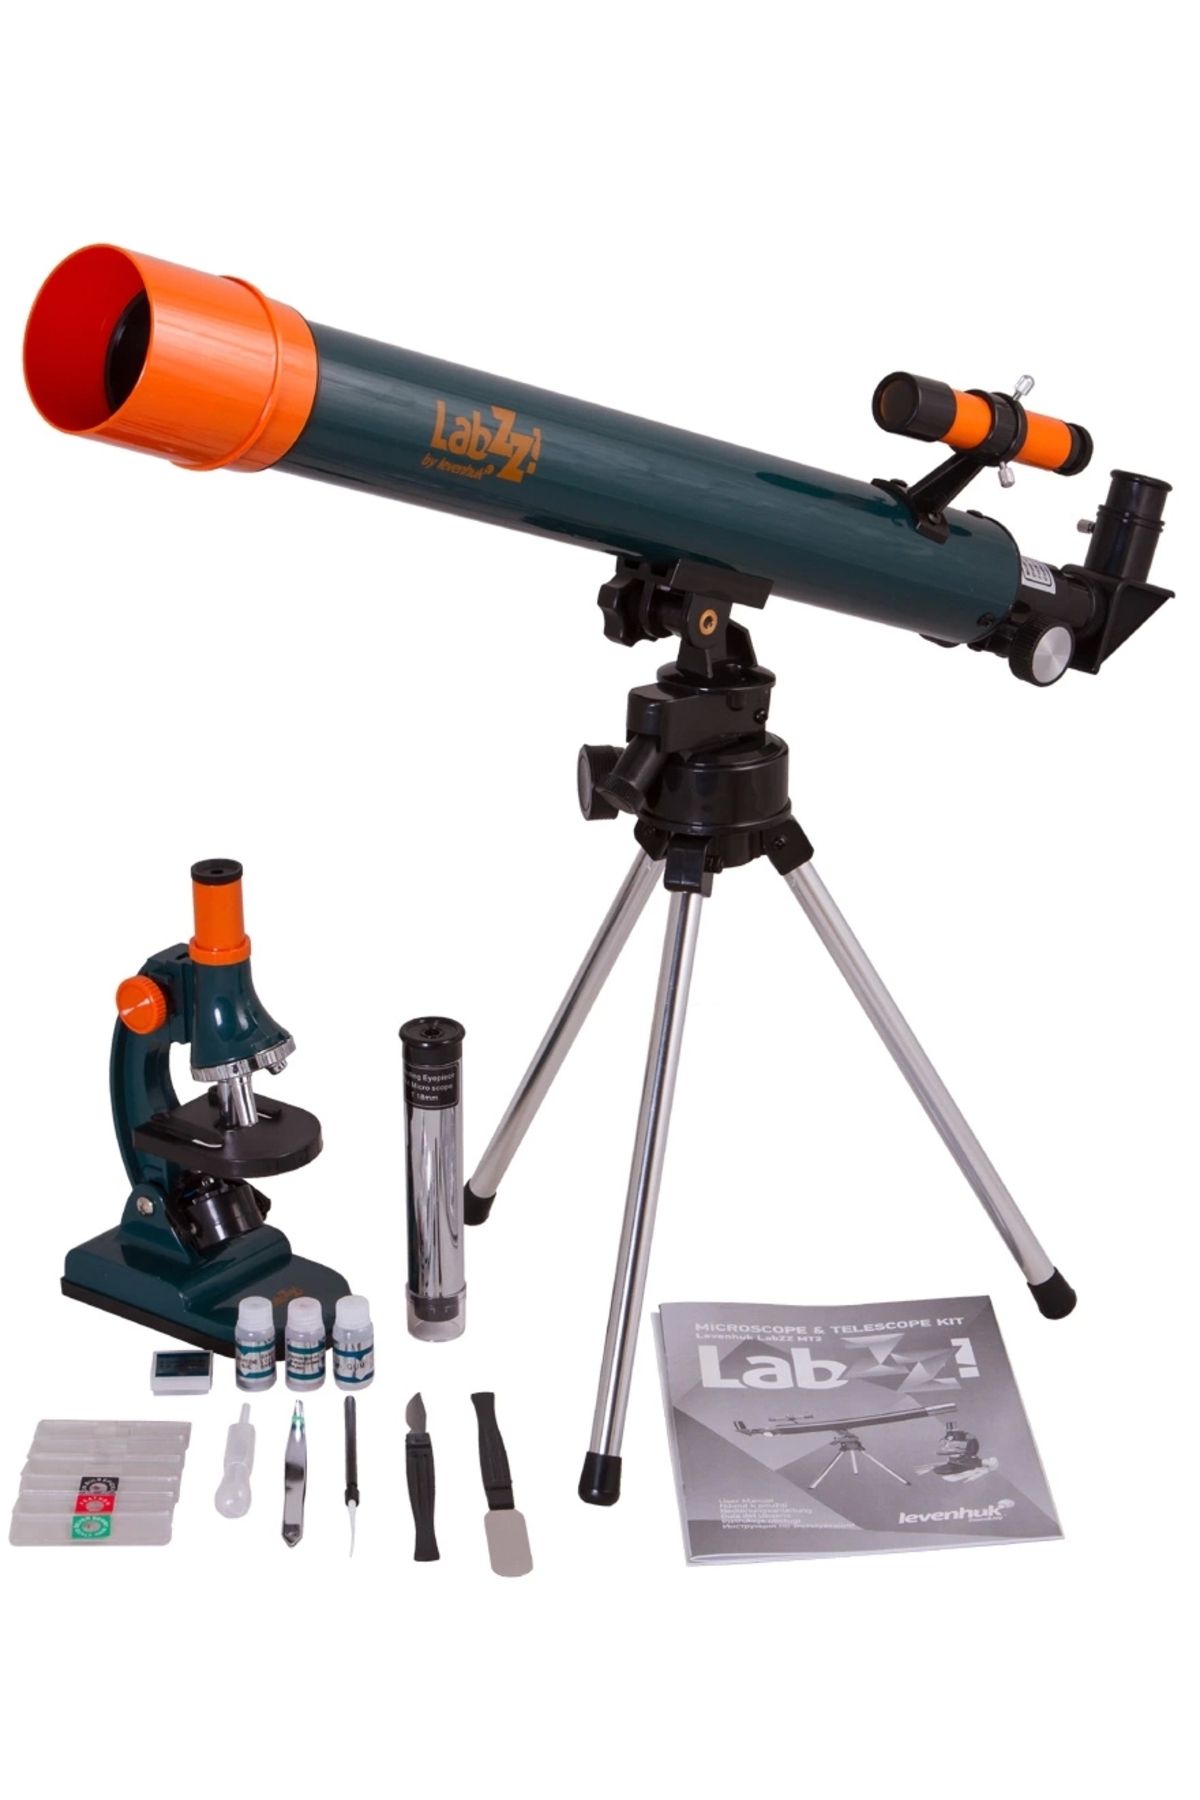 Genel Markalar Labzz Mt2 Mikroskop Ve Teleskop Kiti (1243)